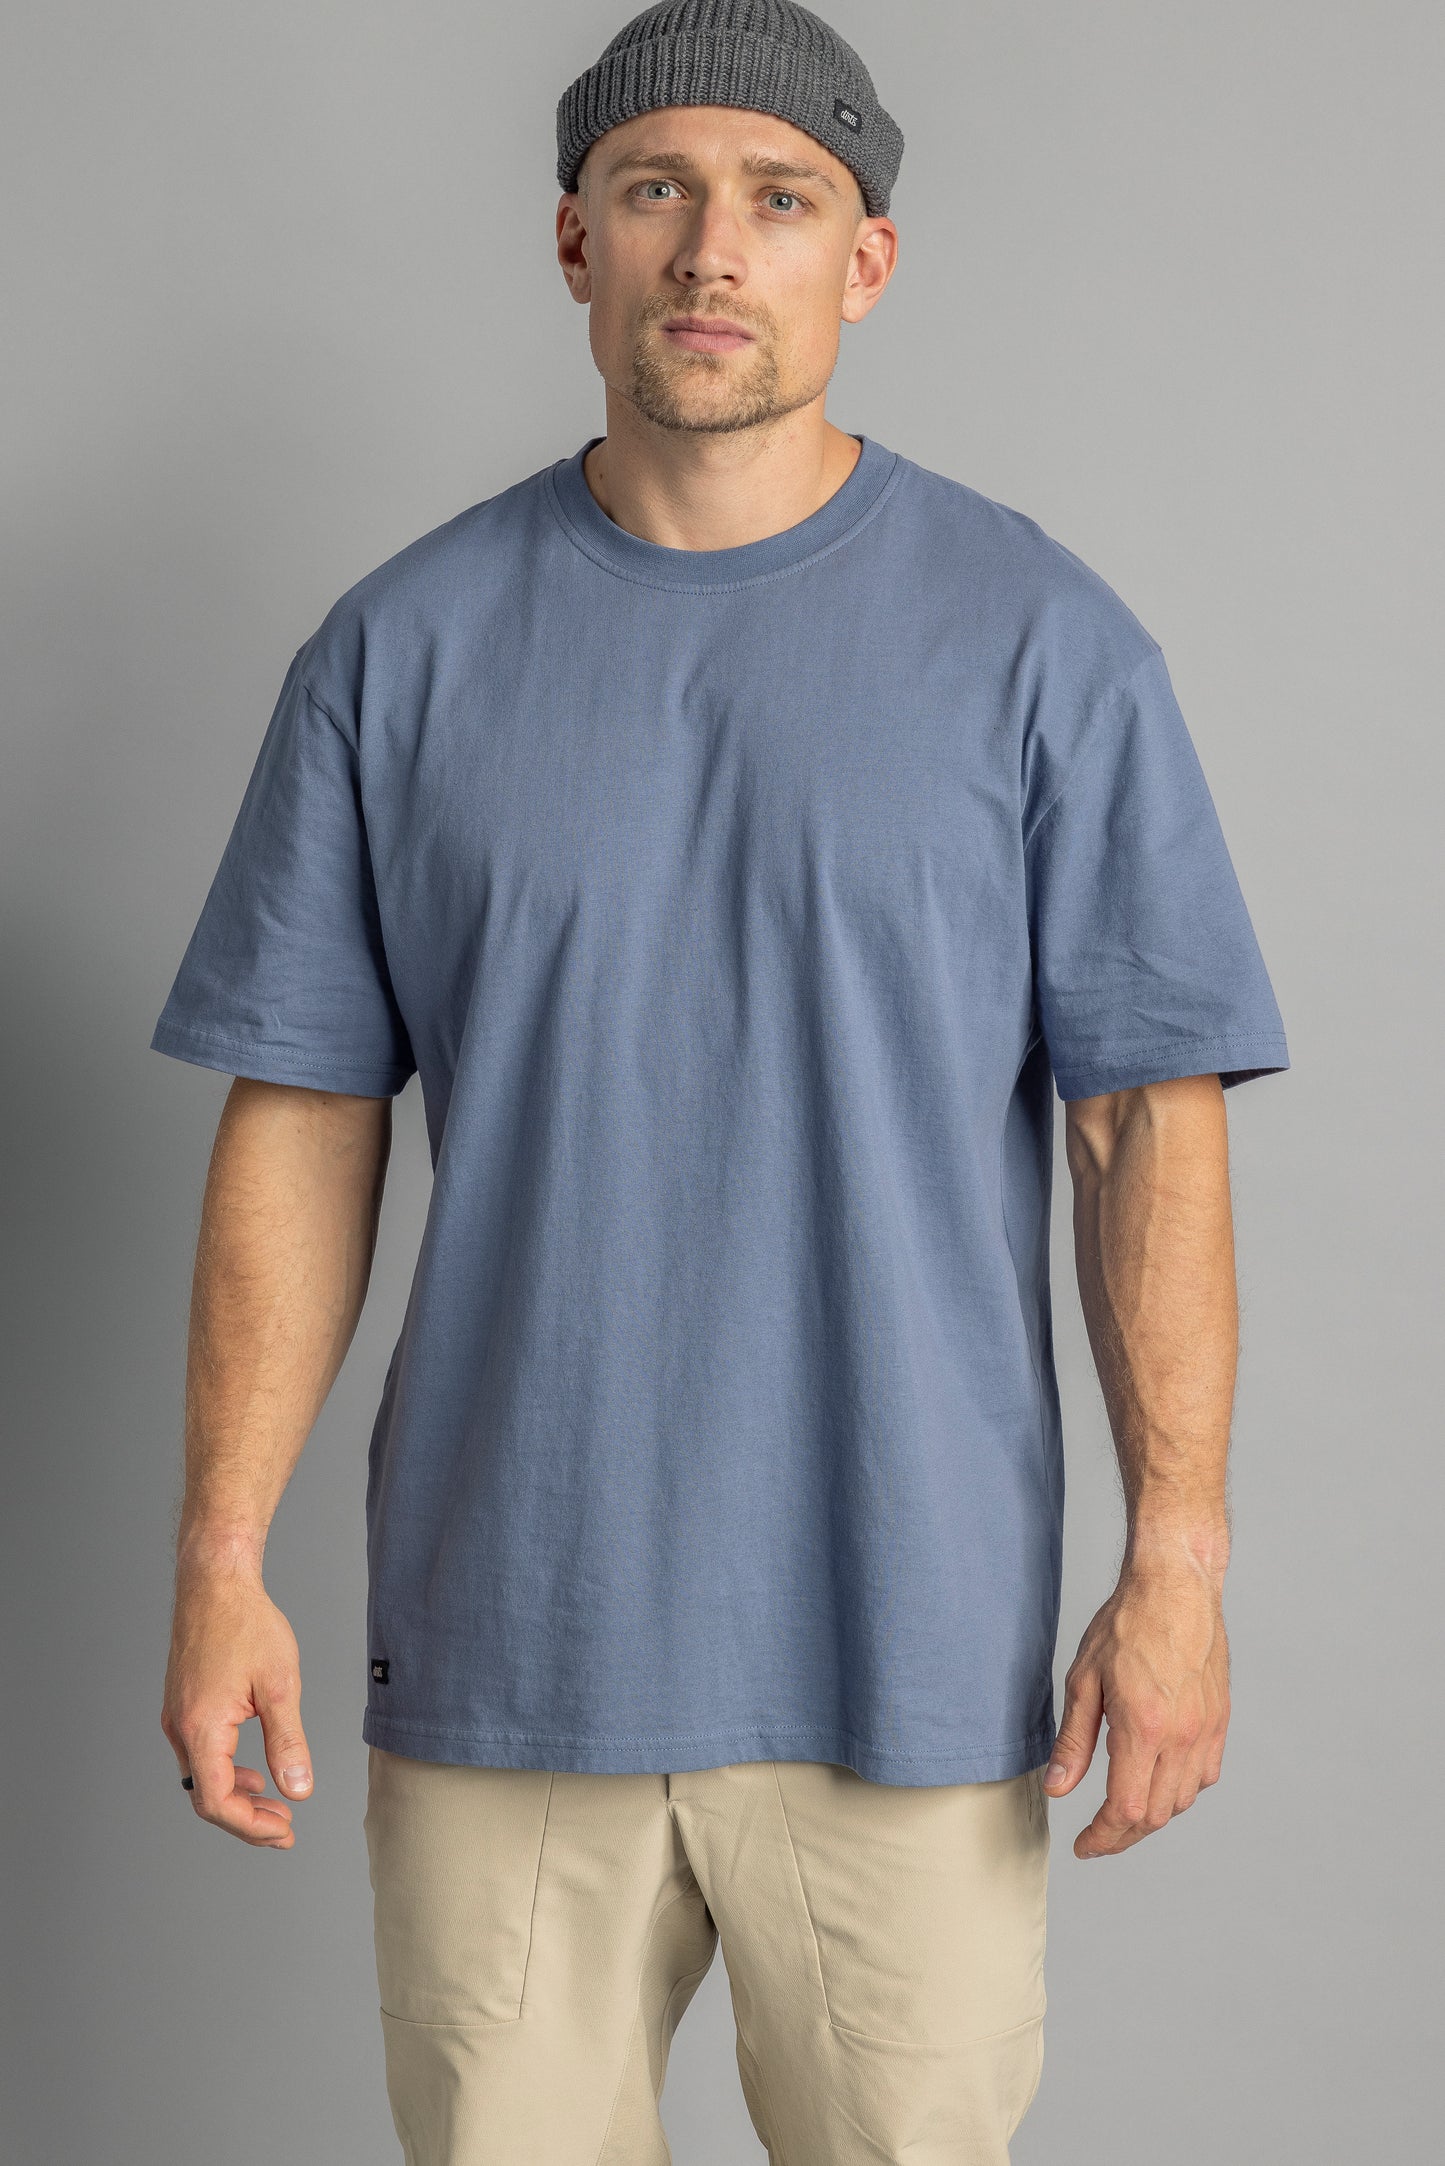 Recycled cotton T-shirt OVERSIZED, aquamarine